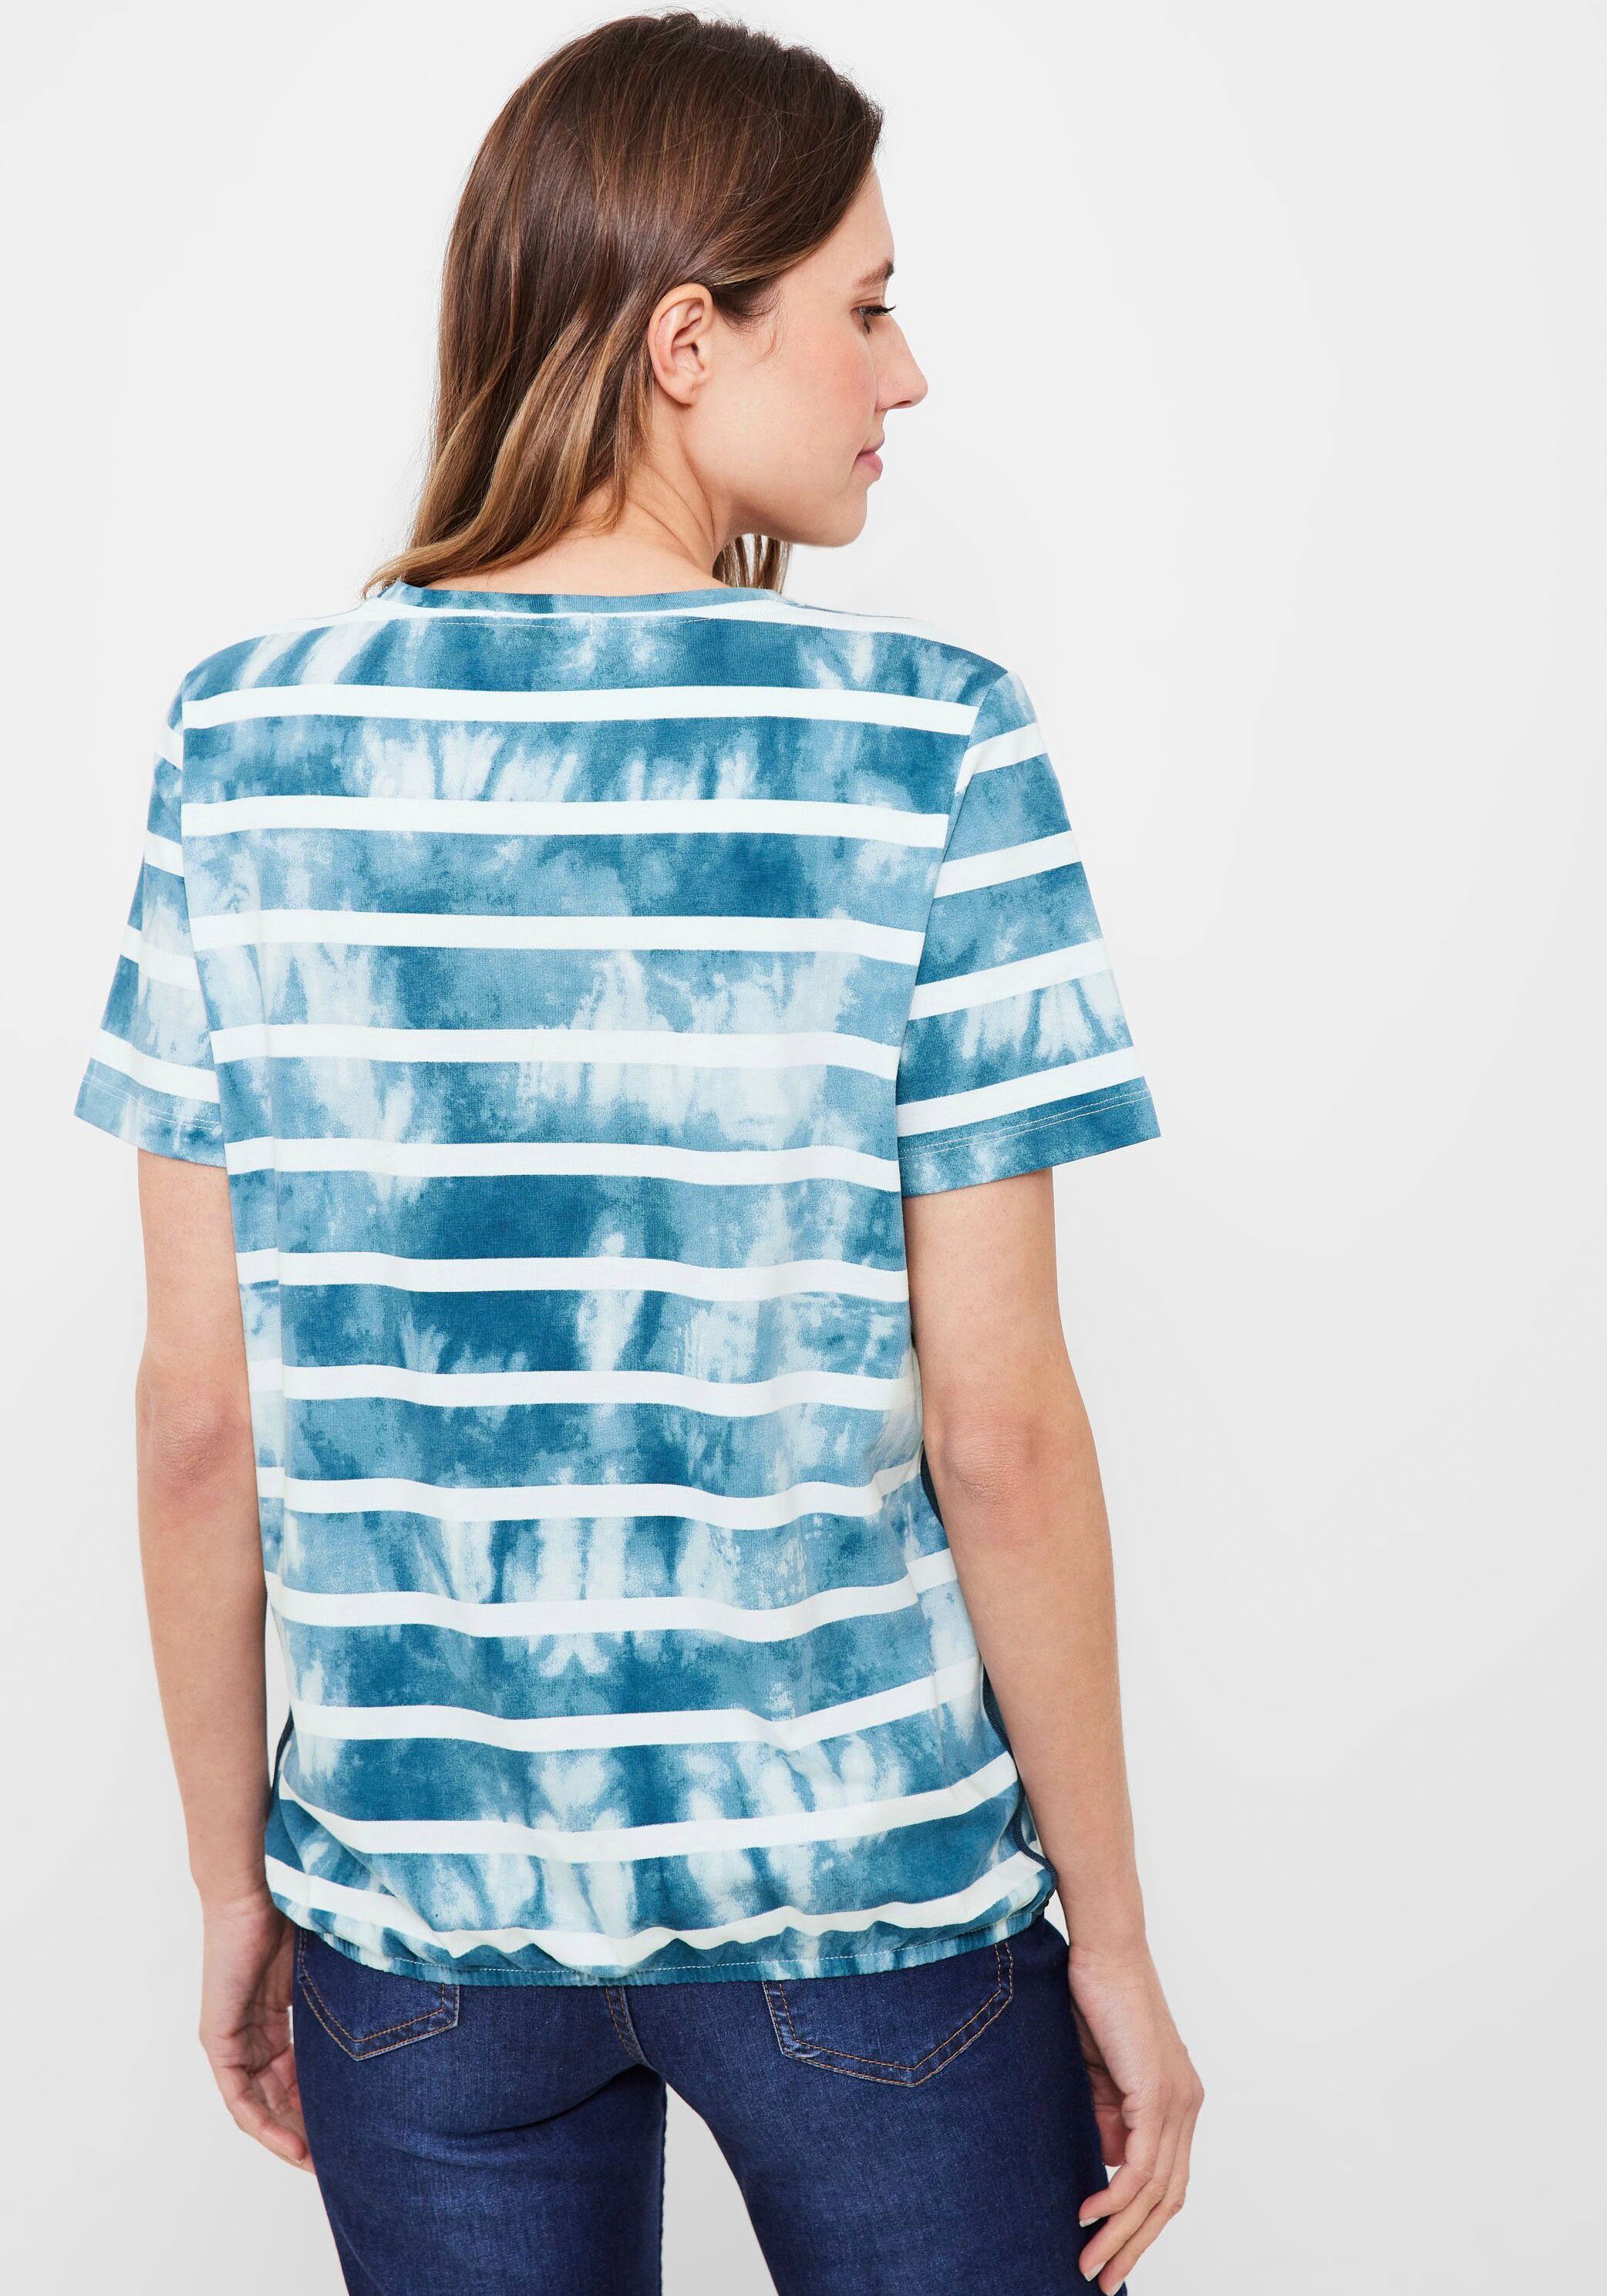 Cecil Print-Shirt mit Paillettenverzierung blue teal